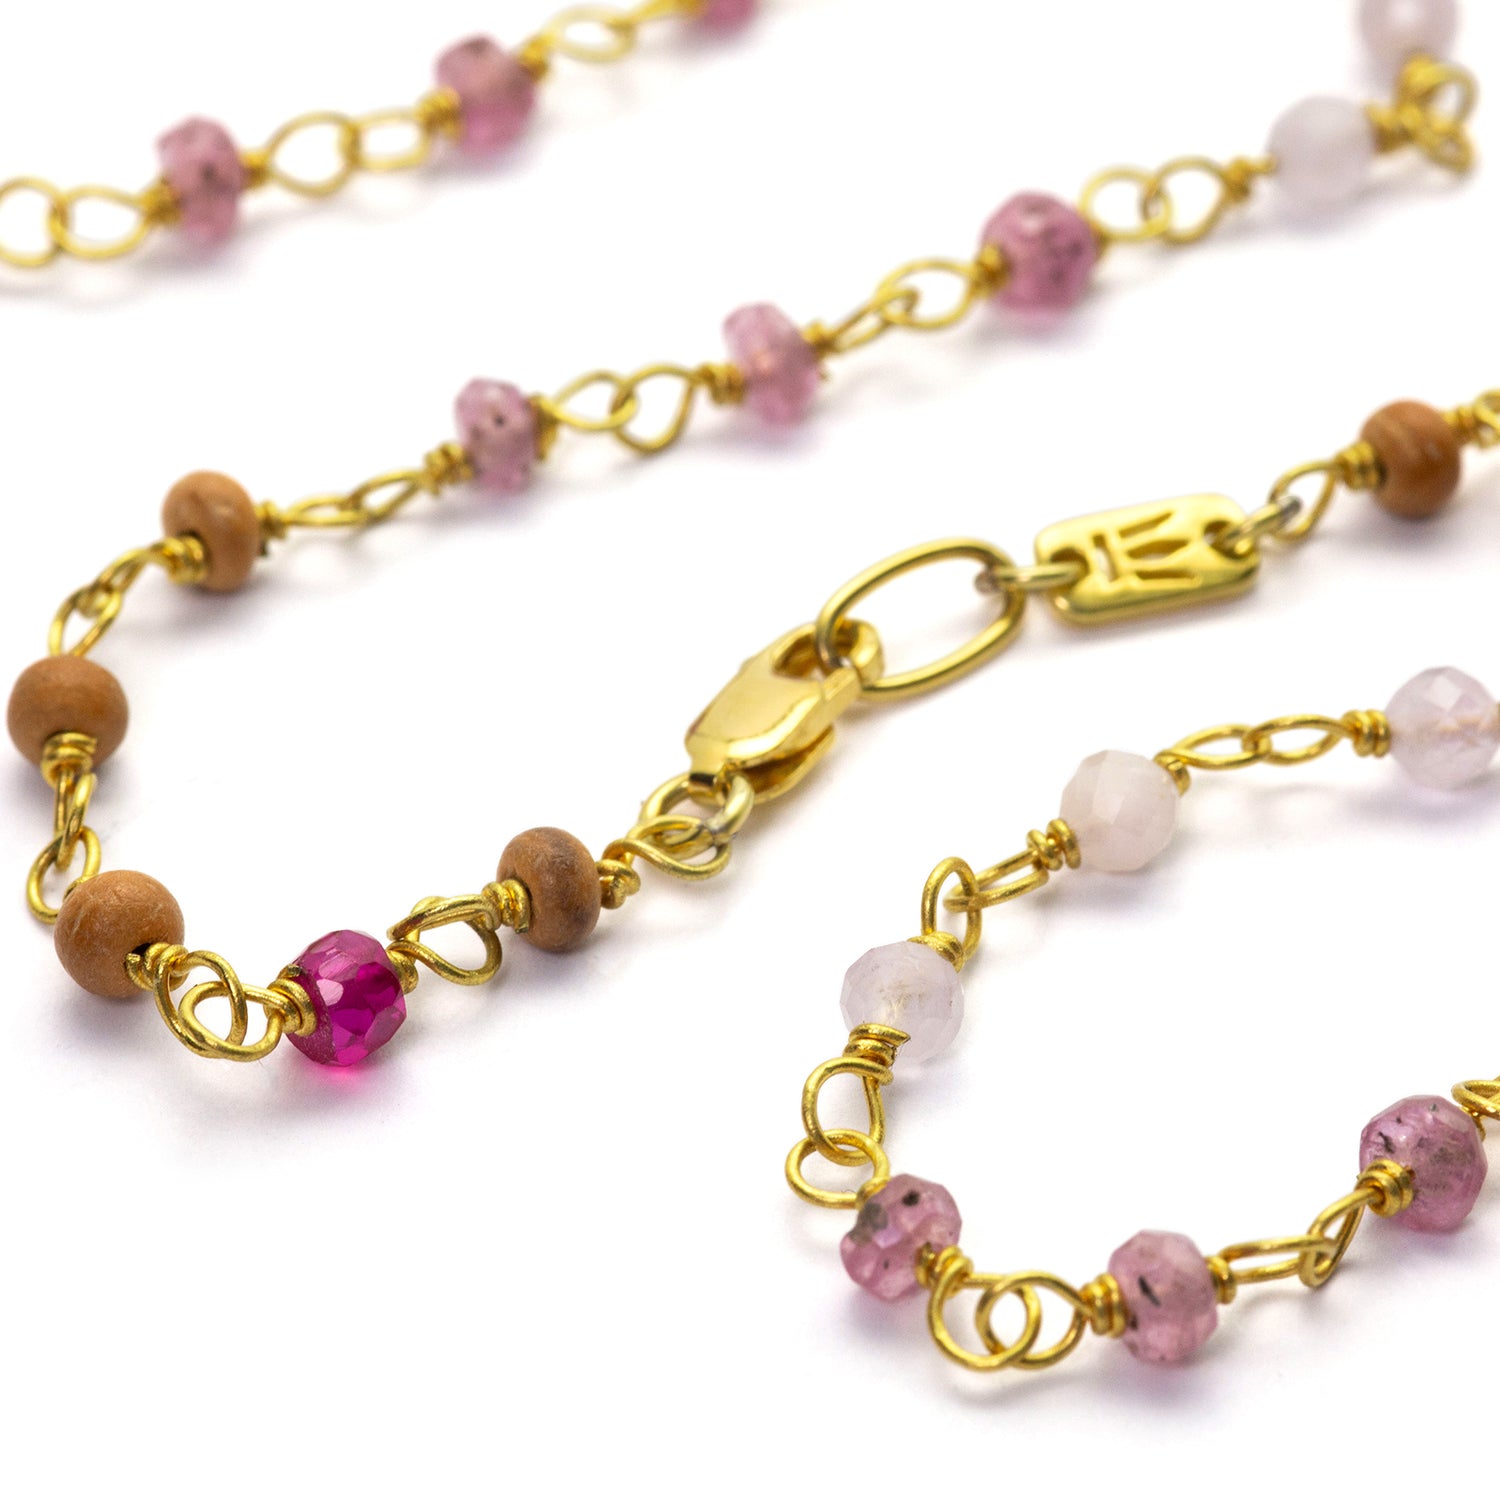 Edelstein-Halskette "Sakura" aus hochwertig vergoldetem Sterling Silber mit Rubinen und Saphiren kombiniert mit Sandelholz von Eternal Bliss